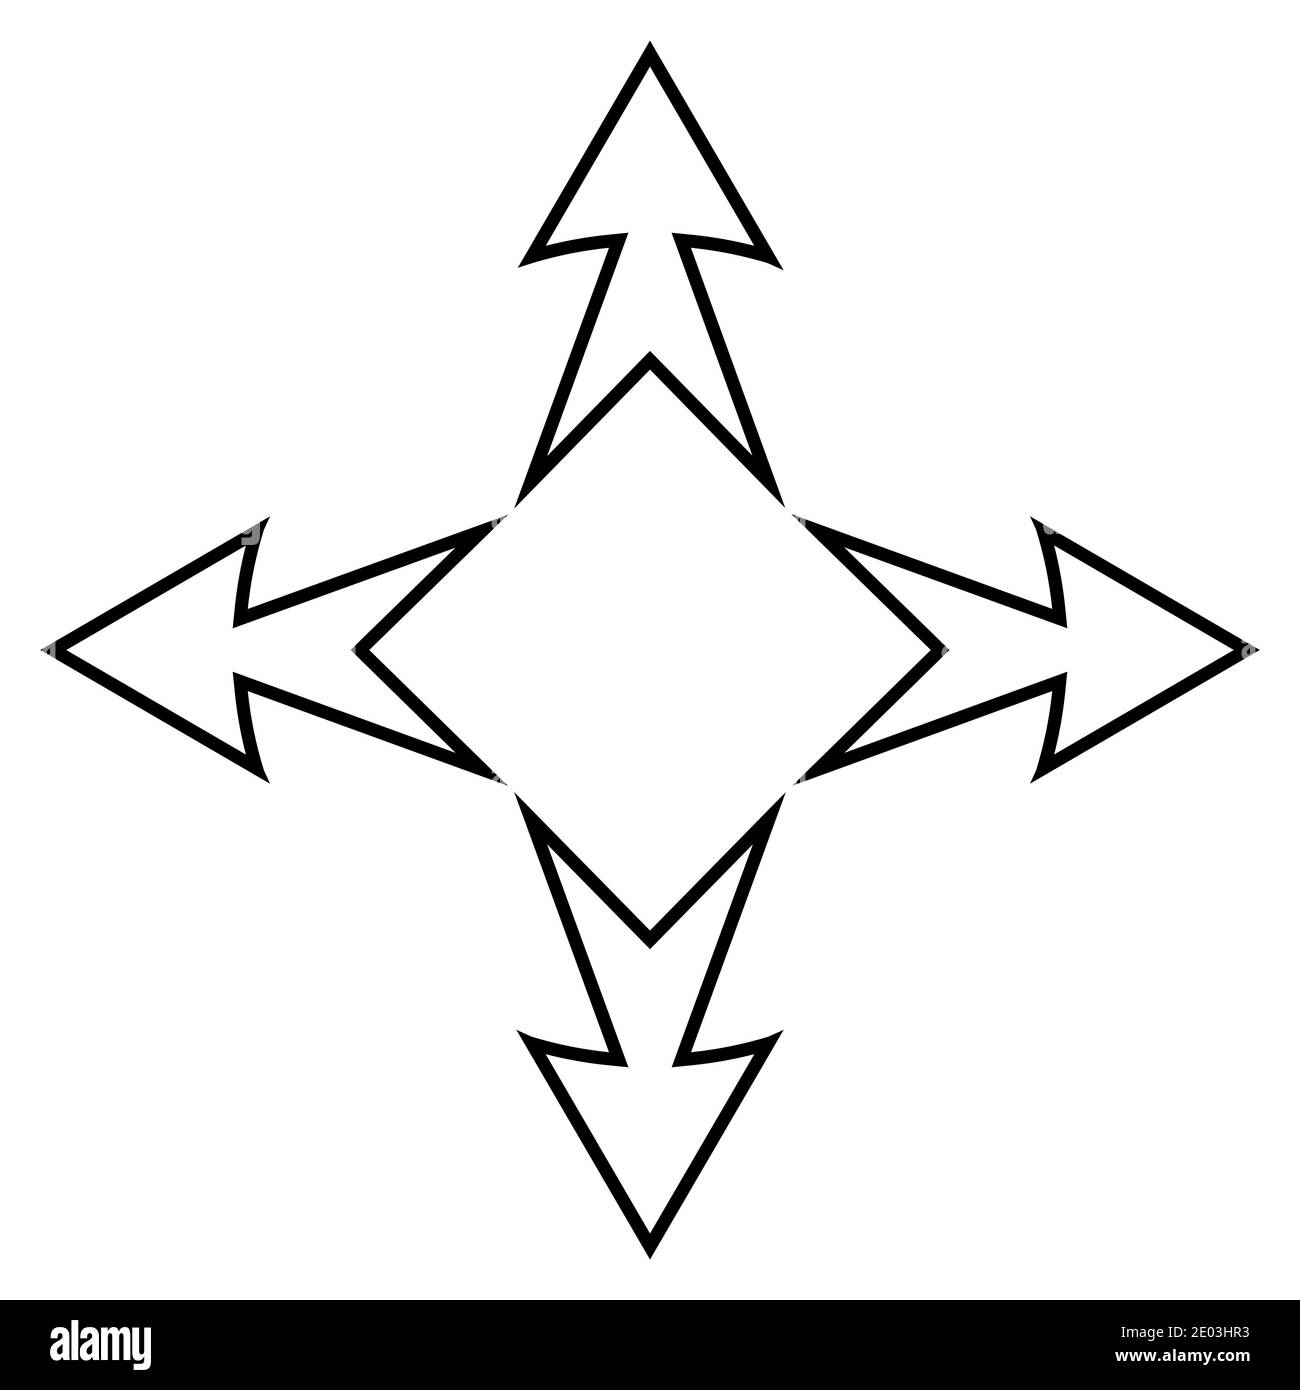 Logo tatouage flèches de la direction cardinal, vecteur de signe d'affaires flèches et carré à l'intérieur, symbole commerce international et affaires Illustration de Vecteur